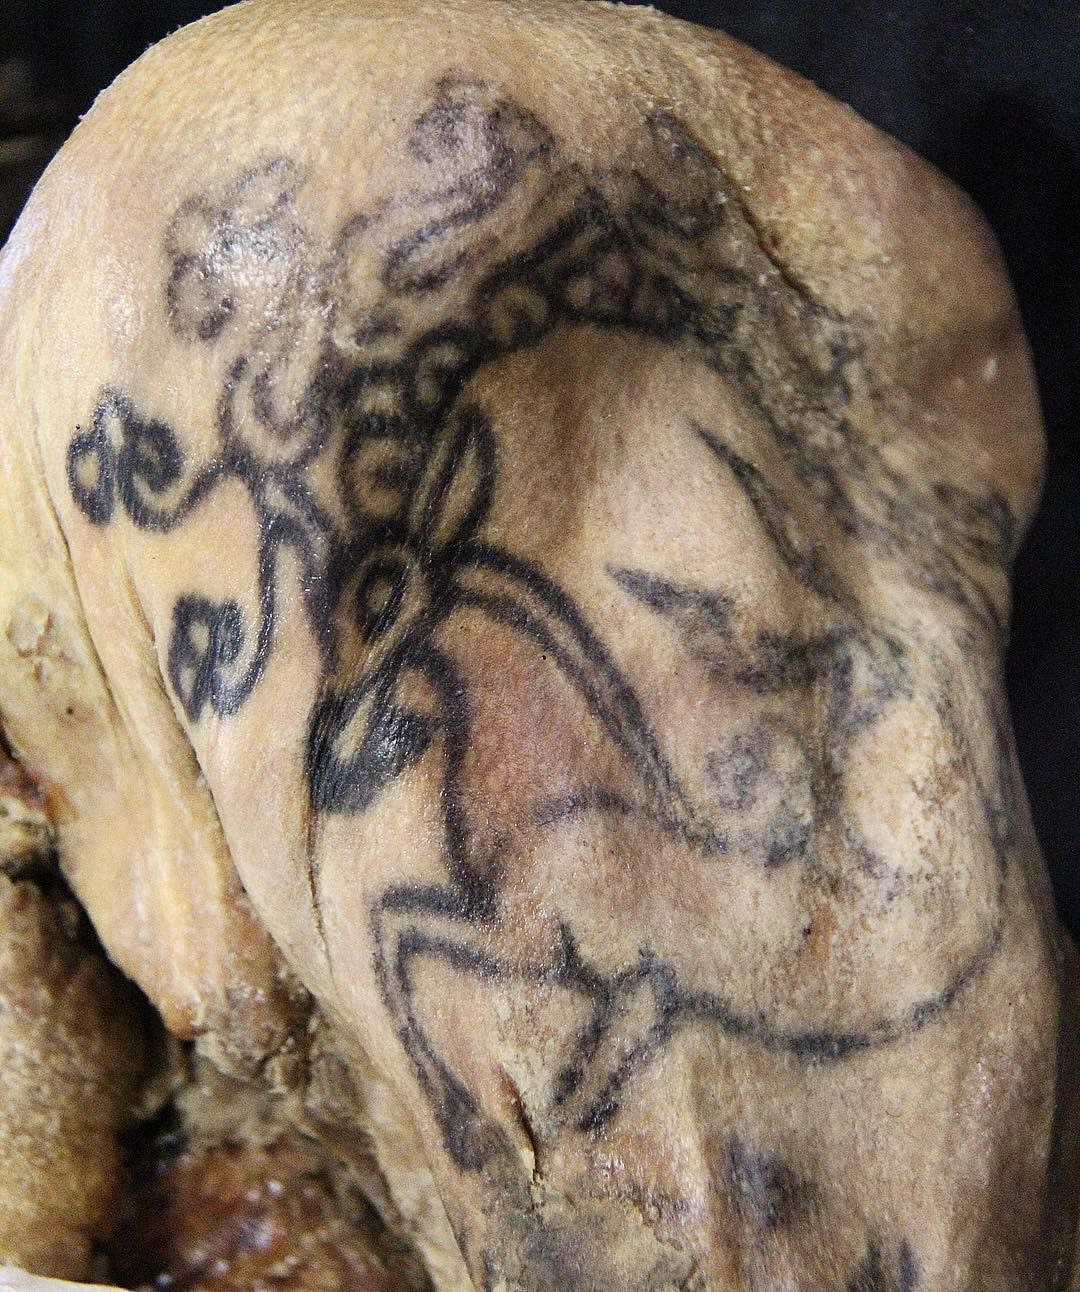 Tetovanie jeleňa